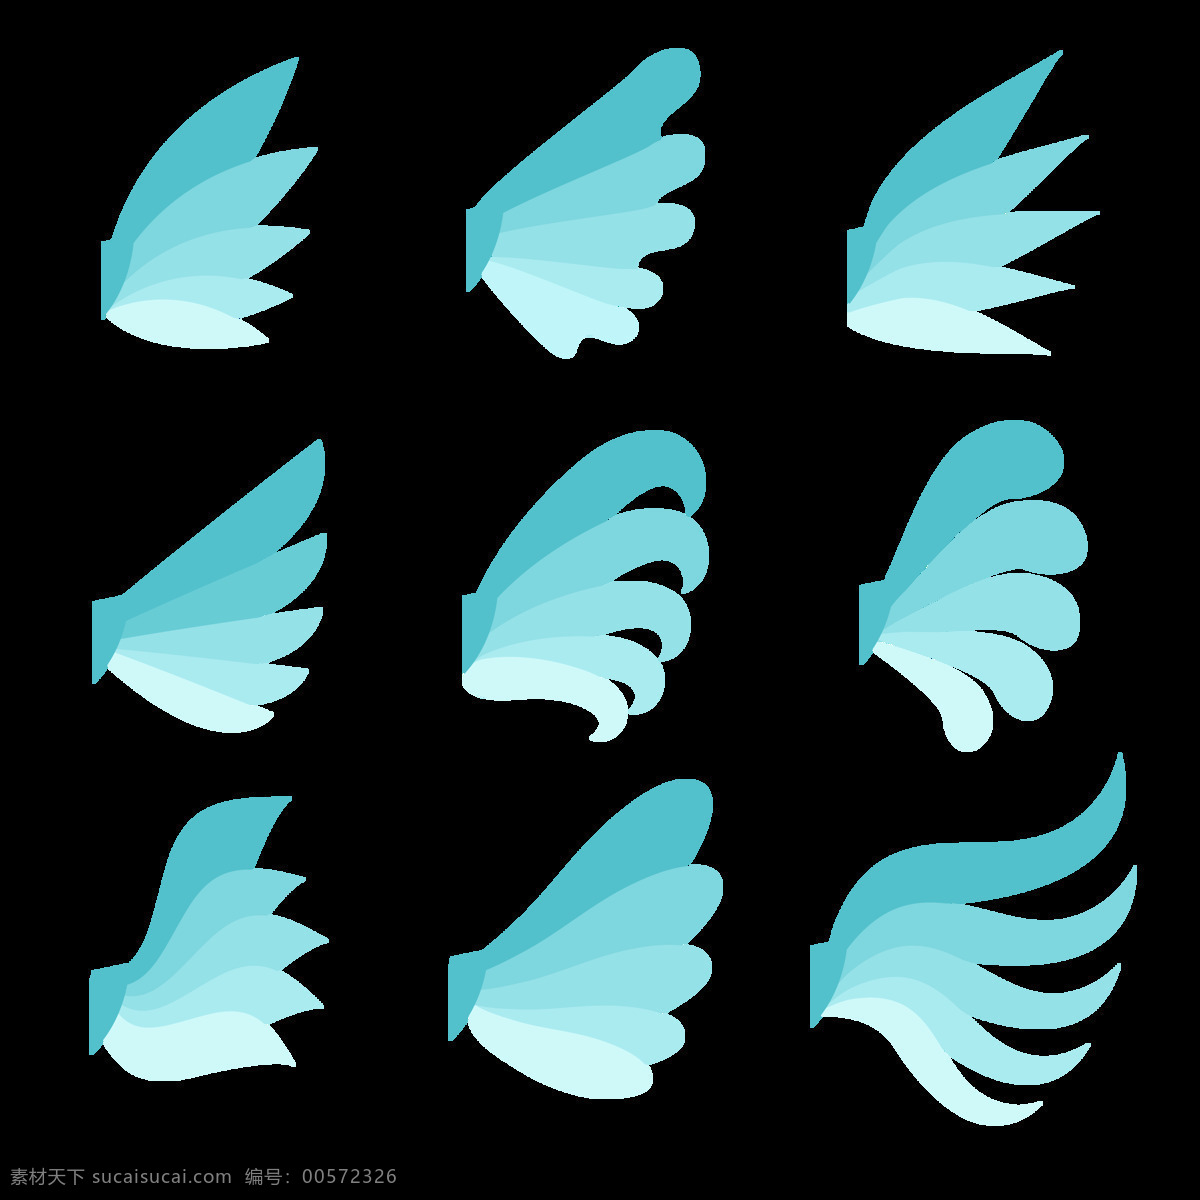 蓝色 调 扁平 翅膀 免 抠 透明 图 层 手绘翅膀 翅膀元素 小 天使 卡通翅膀 翅膀图片素材 纹身图案 翅膀素材 手绘翅膀图片